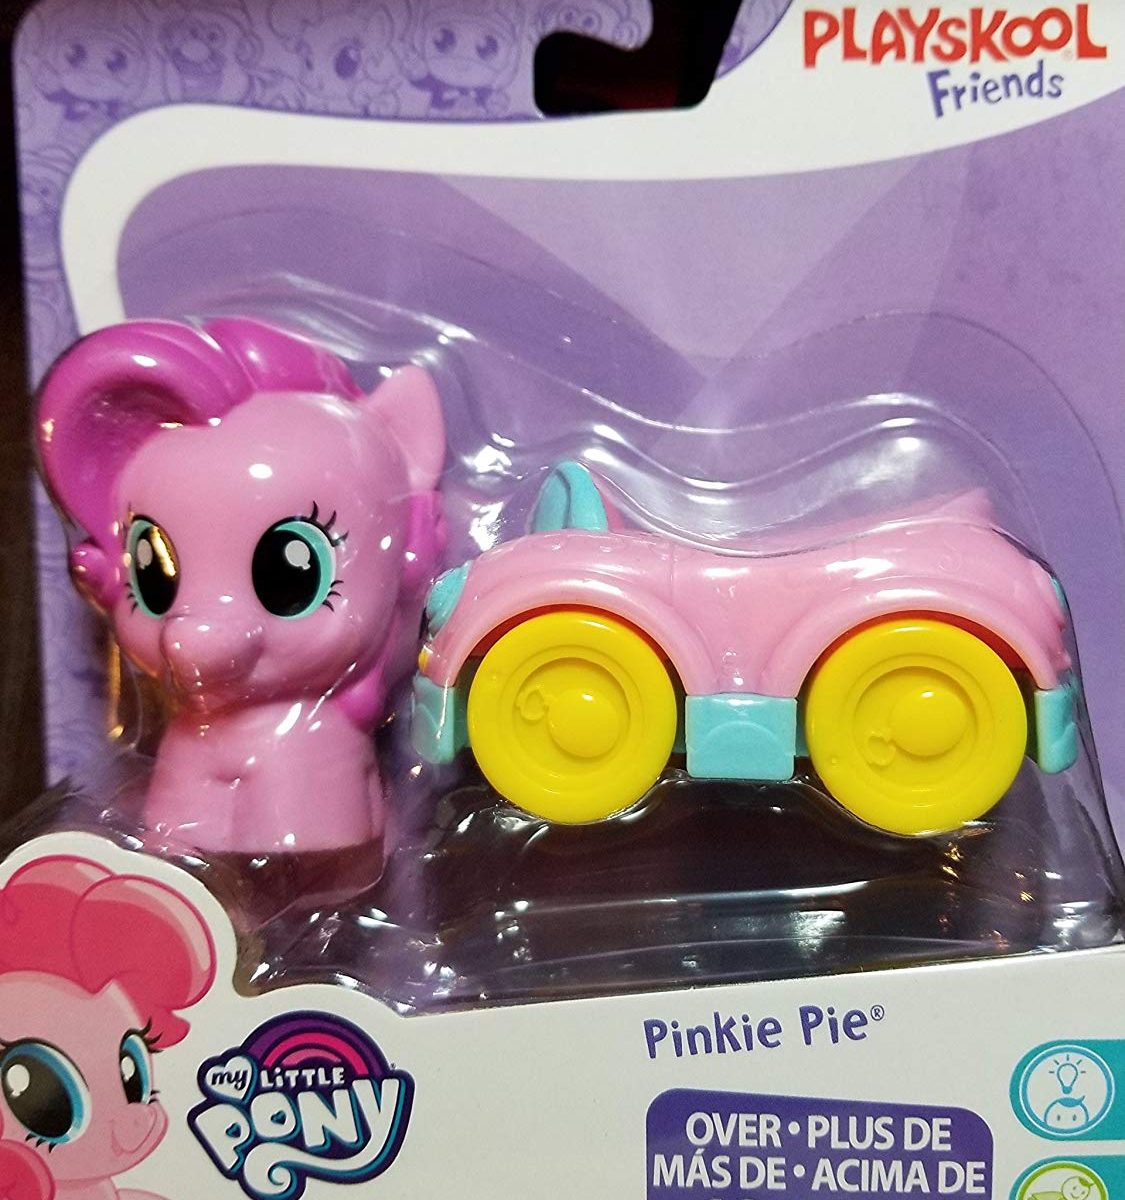 MLP: TM Playskool Pinkie Pie Figure and Vehicle Set